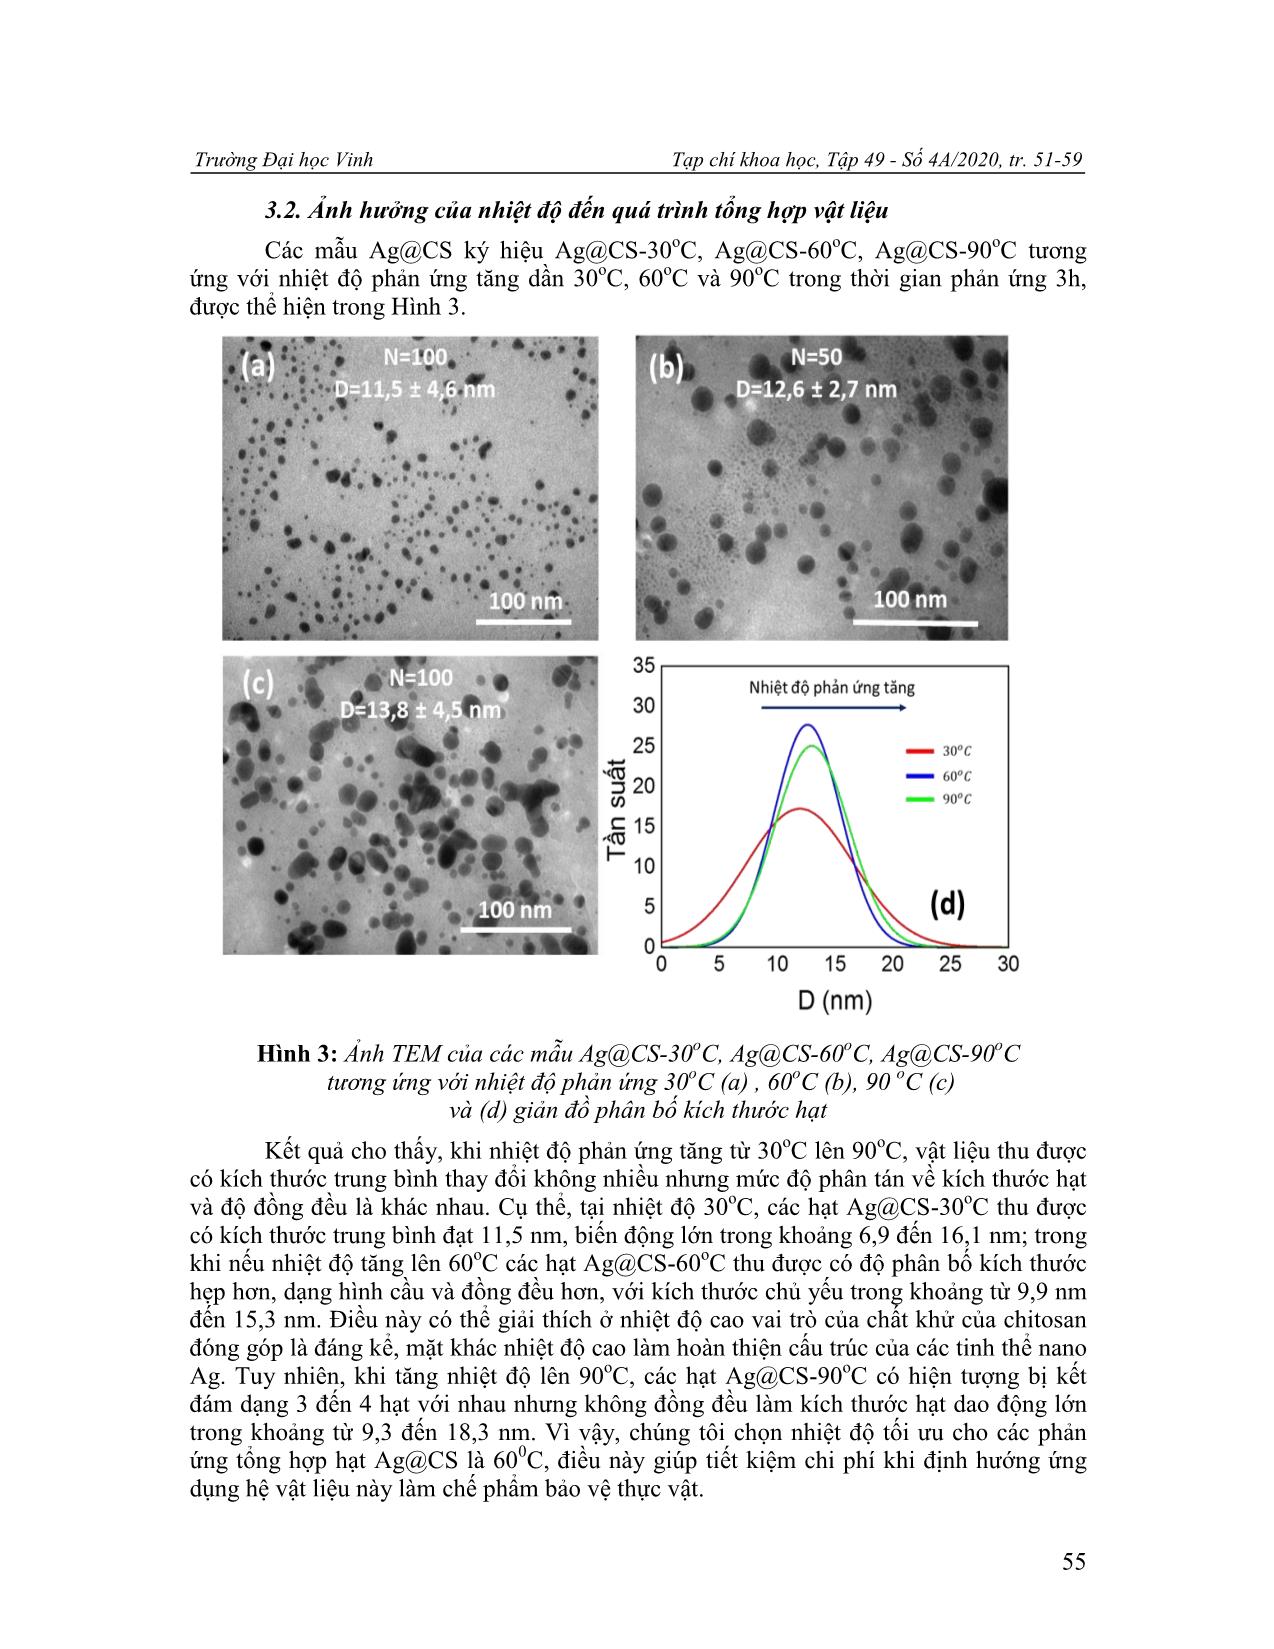 Nghiên cứu chế tạo nano bạc - Chitosan theo phương pháp bọc in-situ định hướng làm chế phẩm phòng bệnh trên cây trồng trang 5